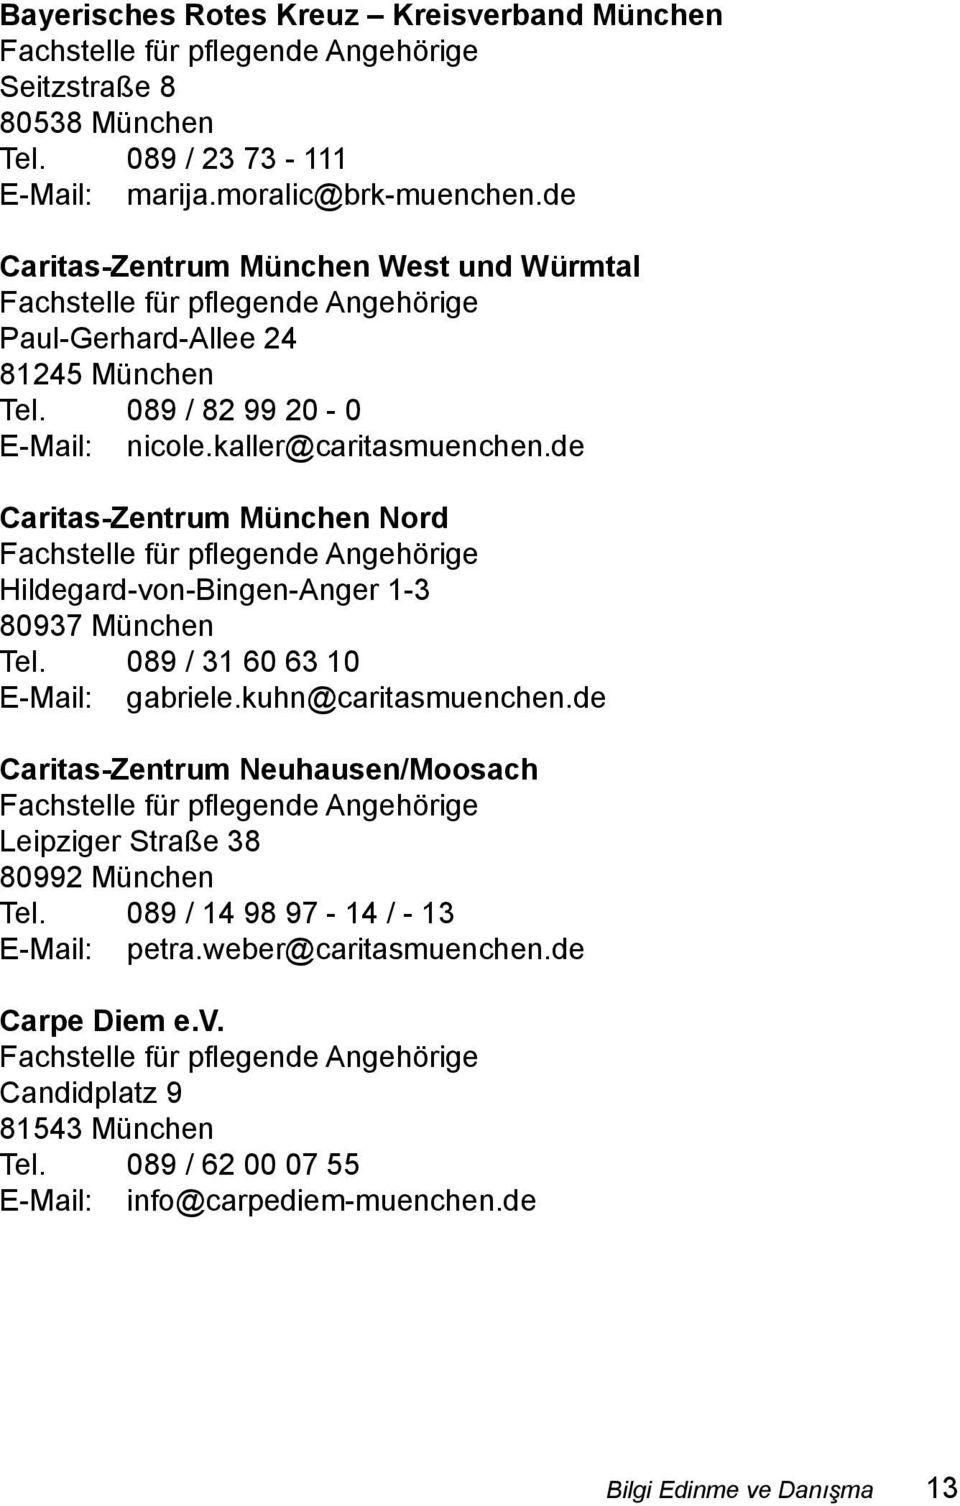 de Caritas-Zentrum München Nord Fachstelle für pflegende Angehörige Hildegard-von-Bingen-Anger 1-3 80937 München Tel. 089 / 31 60 63 10 E-Mail: gabriele.kuhn@caritasmuenchen.